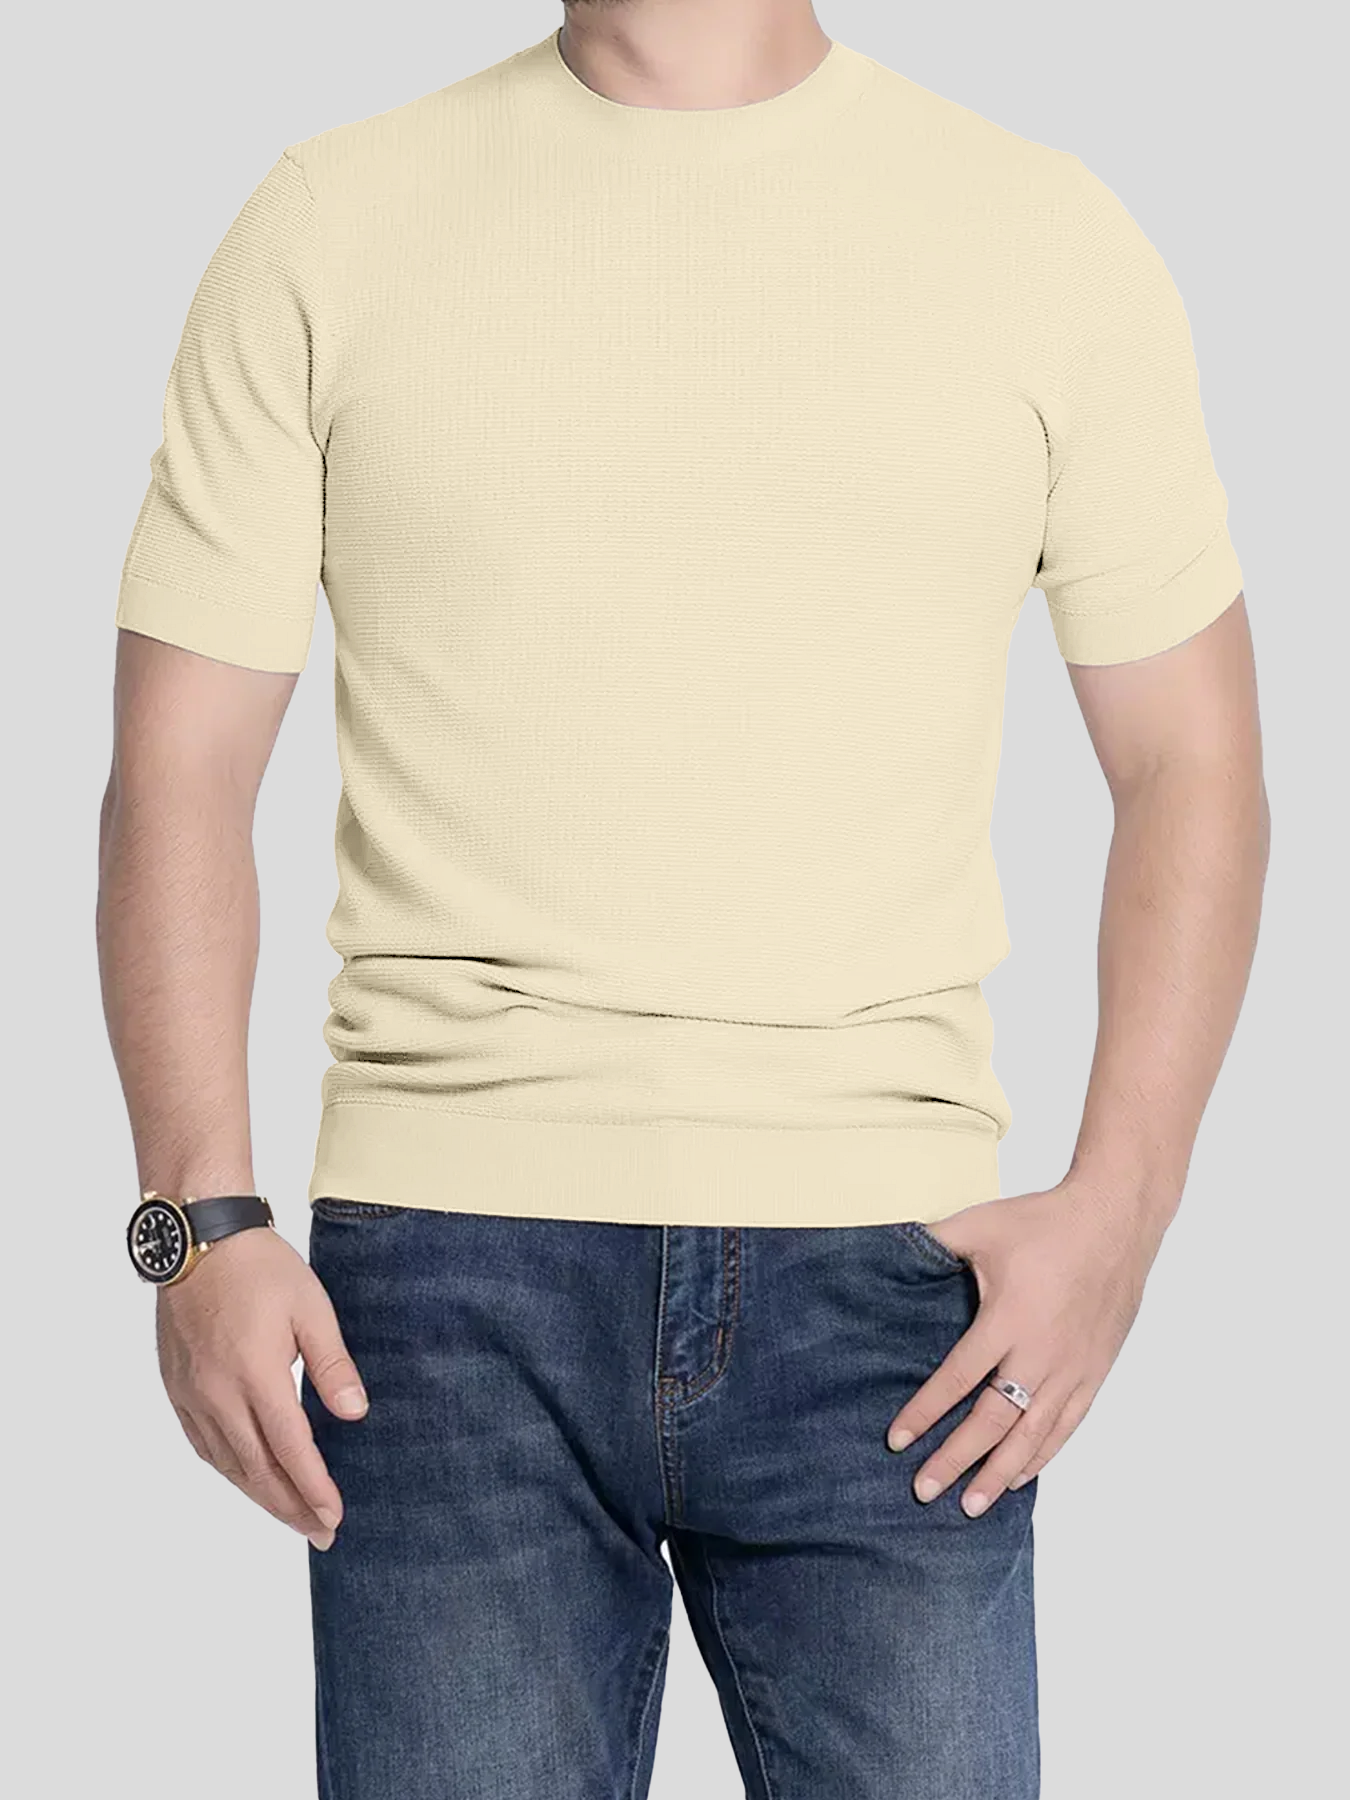 GentleKnit Honeycomb Short Sleeve Knitted T-Shirt